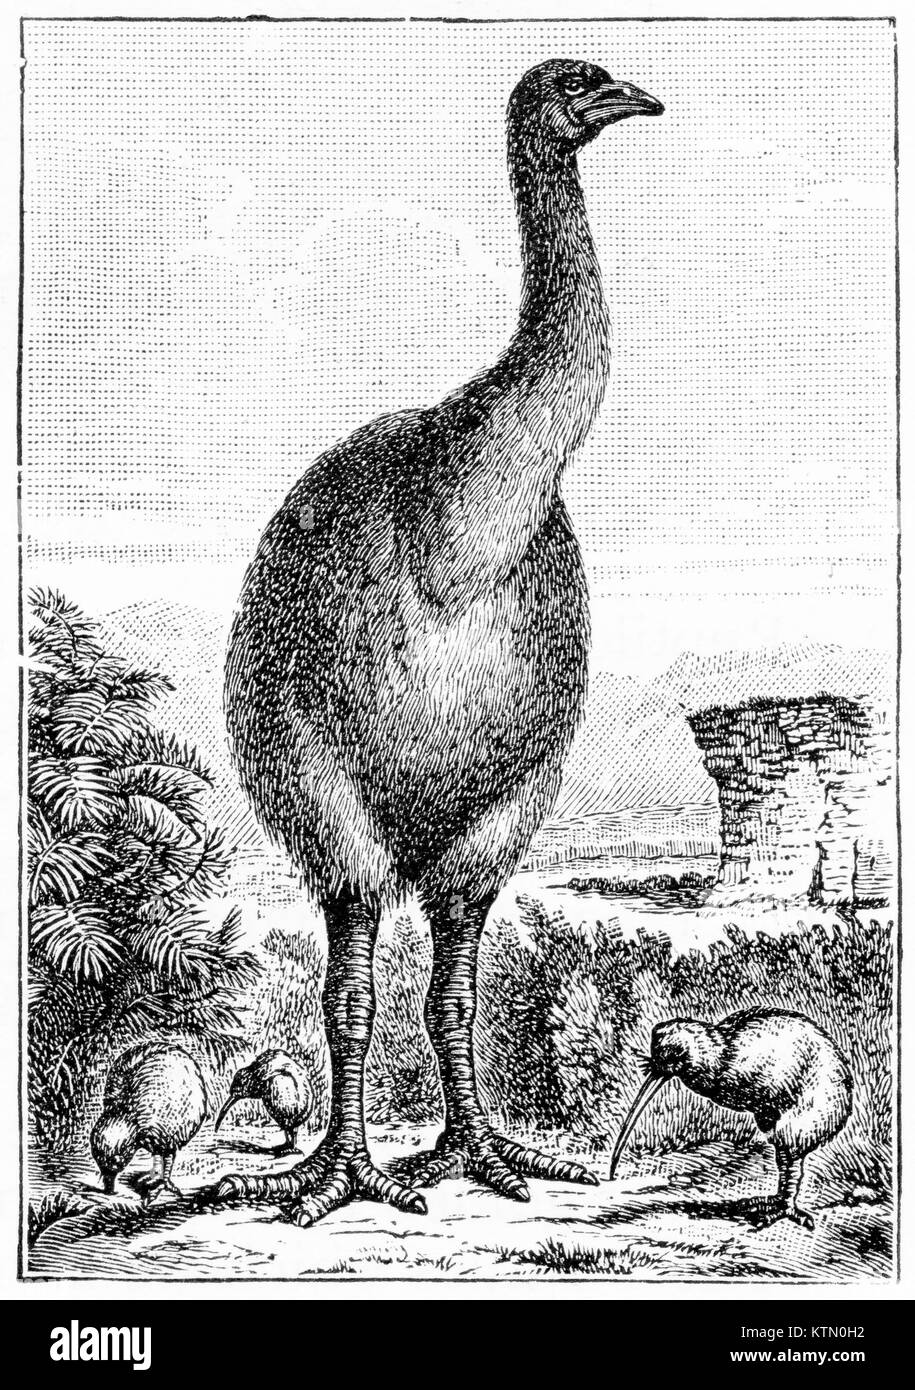 Gravure d'une espèce nouvelle Zélande moa et d'un kiwi. De grandes lignes de zoologie par Thomson, 1906. Banque D'Images